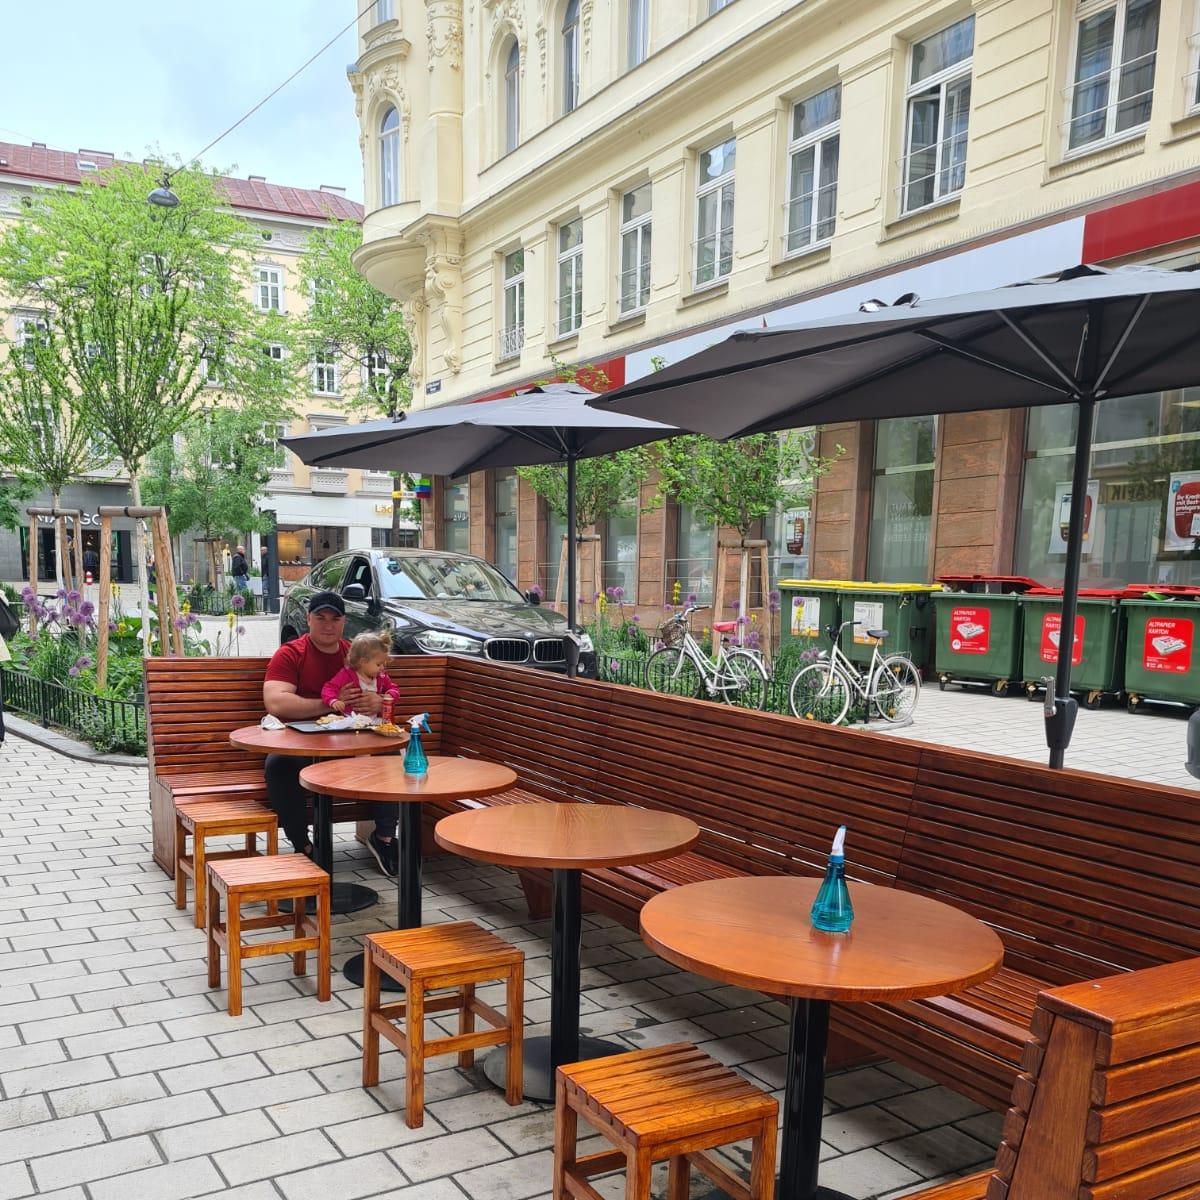 Restaurant "Street Grill Vienna" in Wien